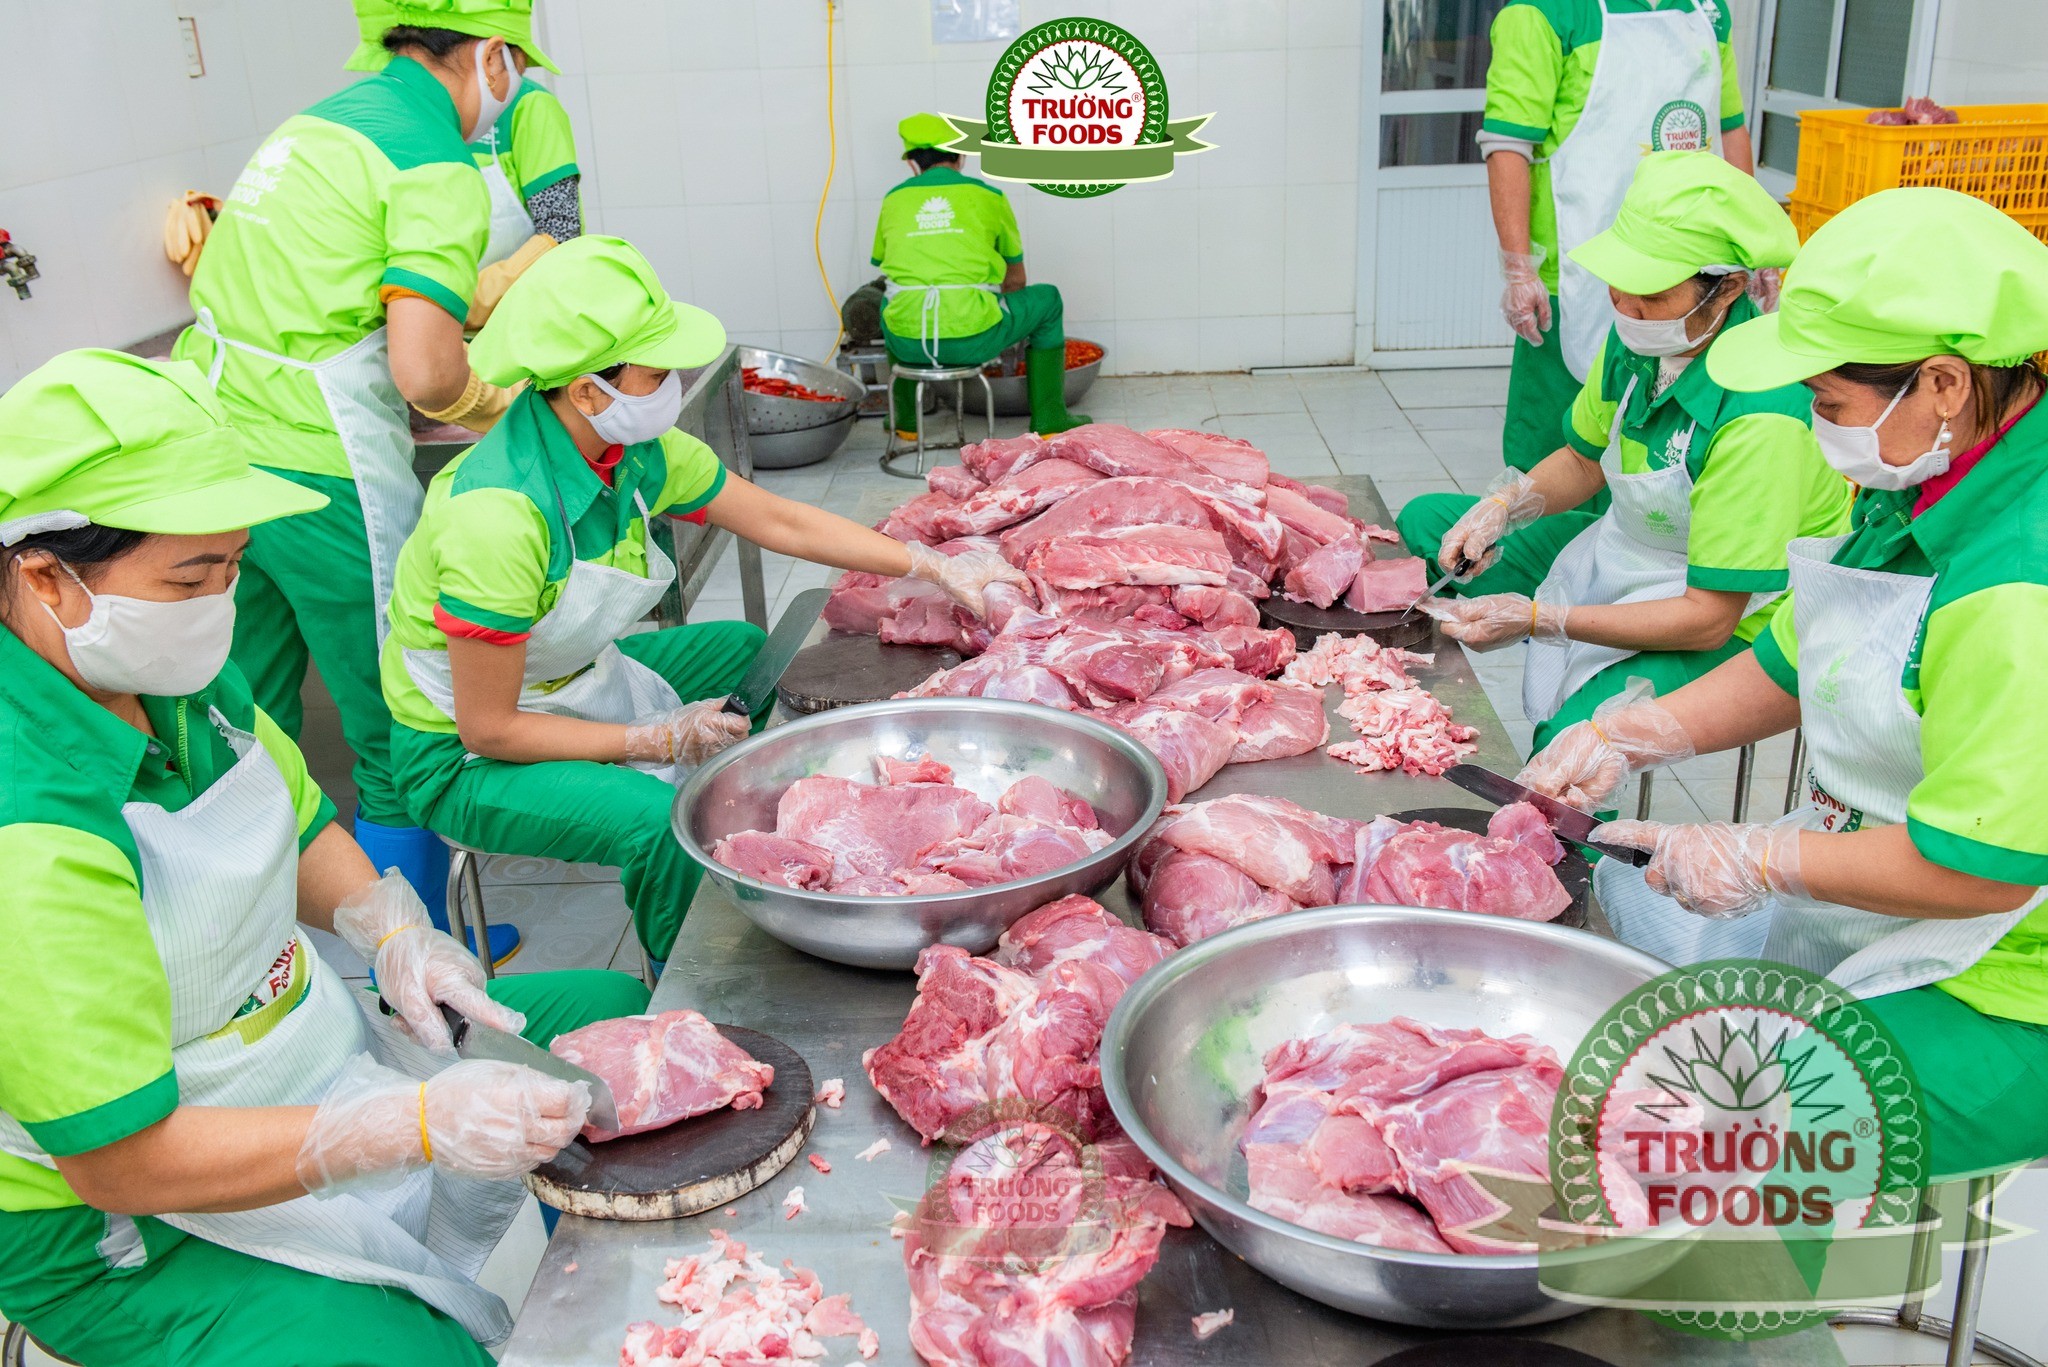 Thịt được đem lọc bỏ hết gân, mỡ sau đó áp chảo qua và đem đi thái mỏng thành miếng vừa ăn.